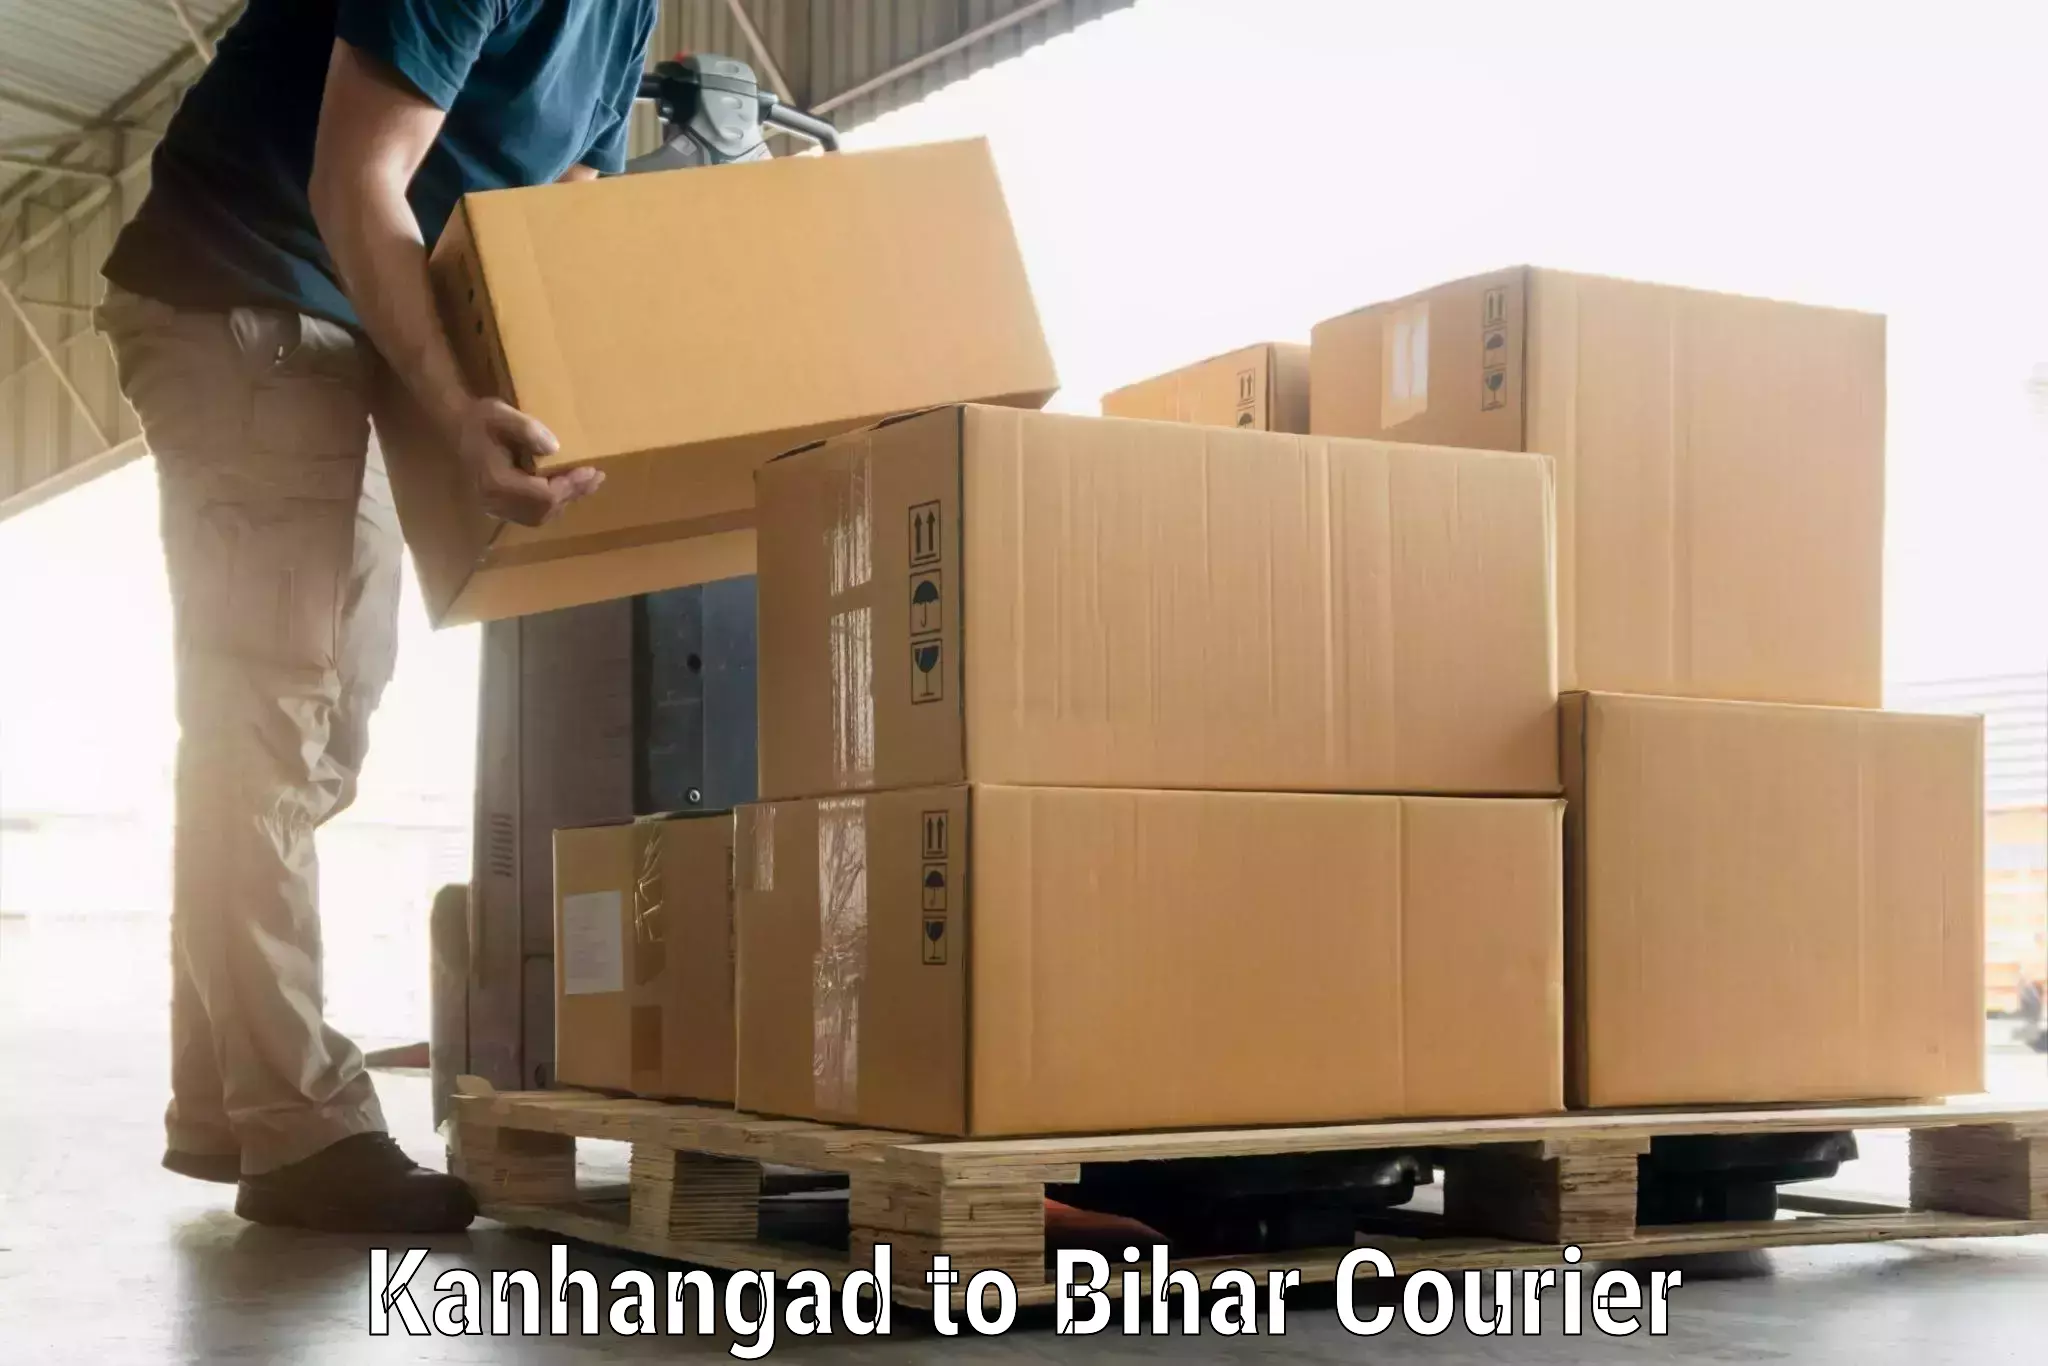 Luggage delivery app Kanhangad to Mahnar Bazar